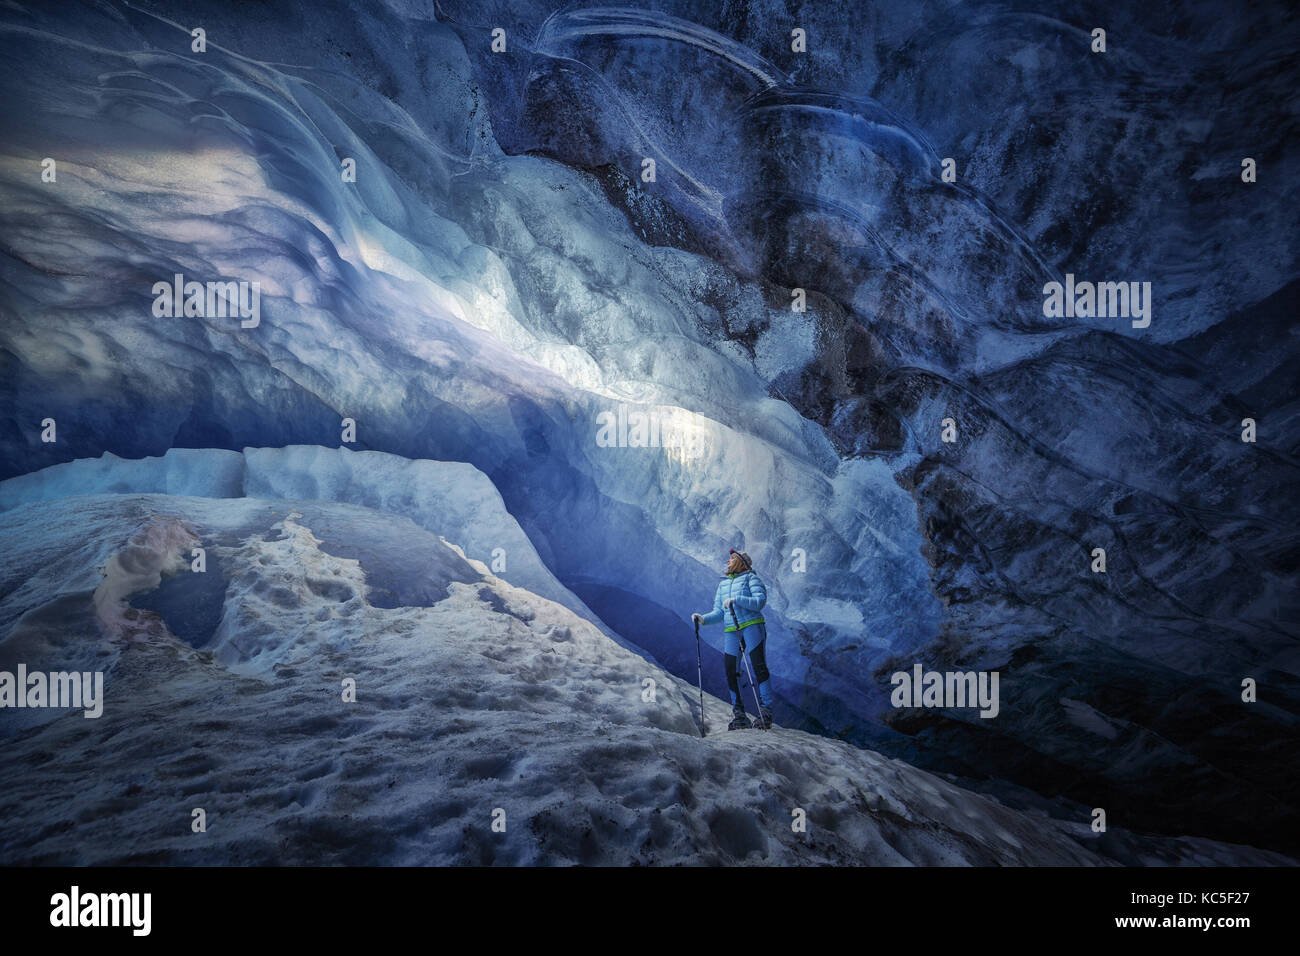 Fille de l'explorateur à l'intérieur d'une grotte de glace au cours d'une expédition dans la photographie Athabasca Glacier Banque D'Images